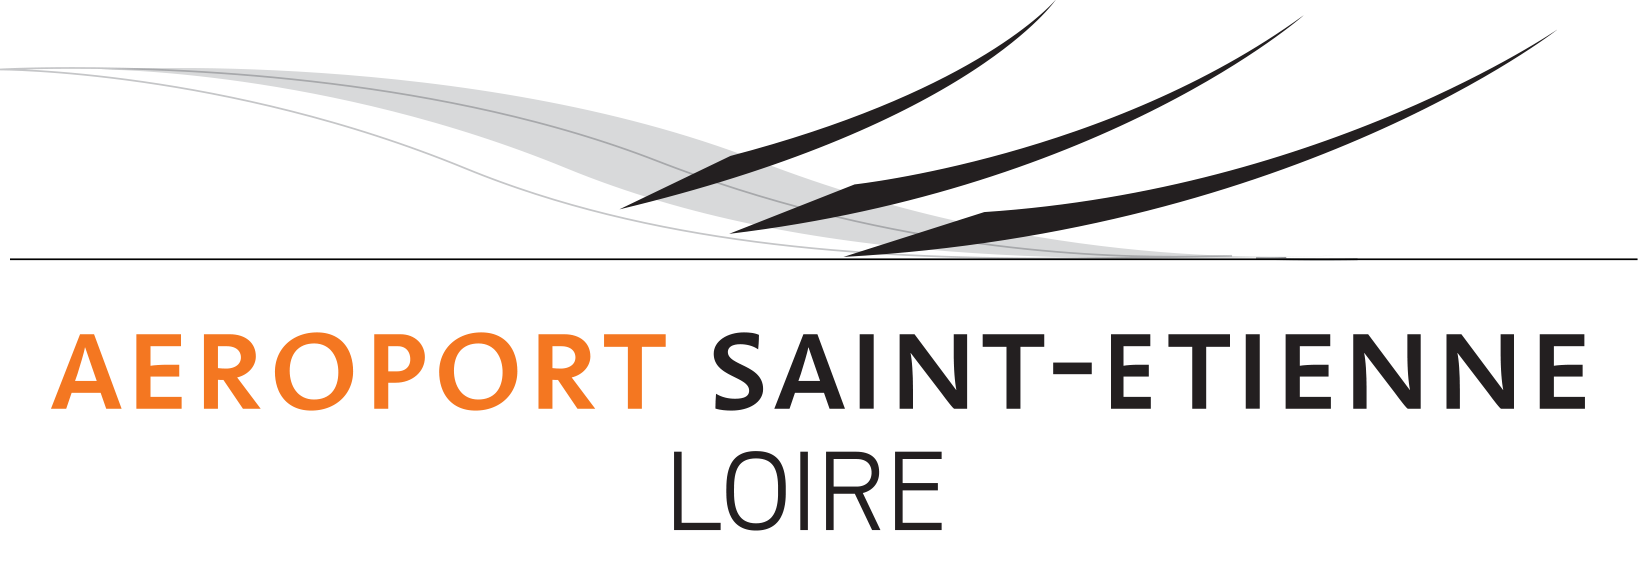 logo aeroport saint etienne loire